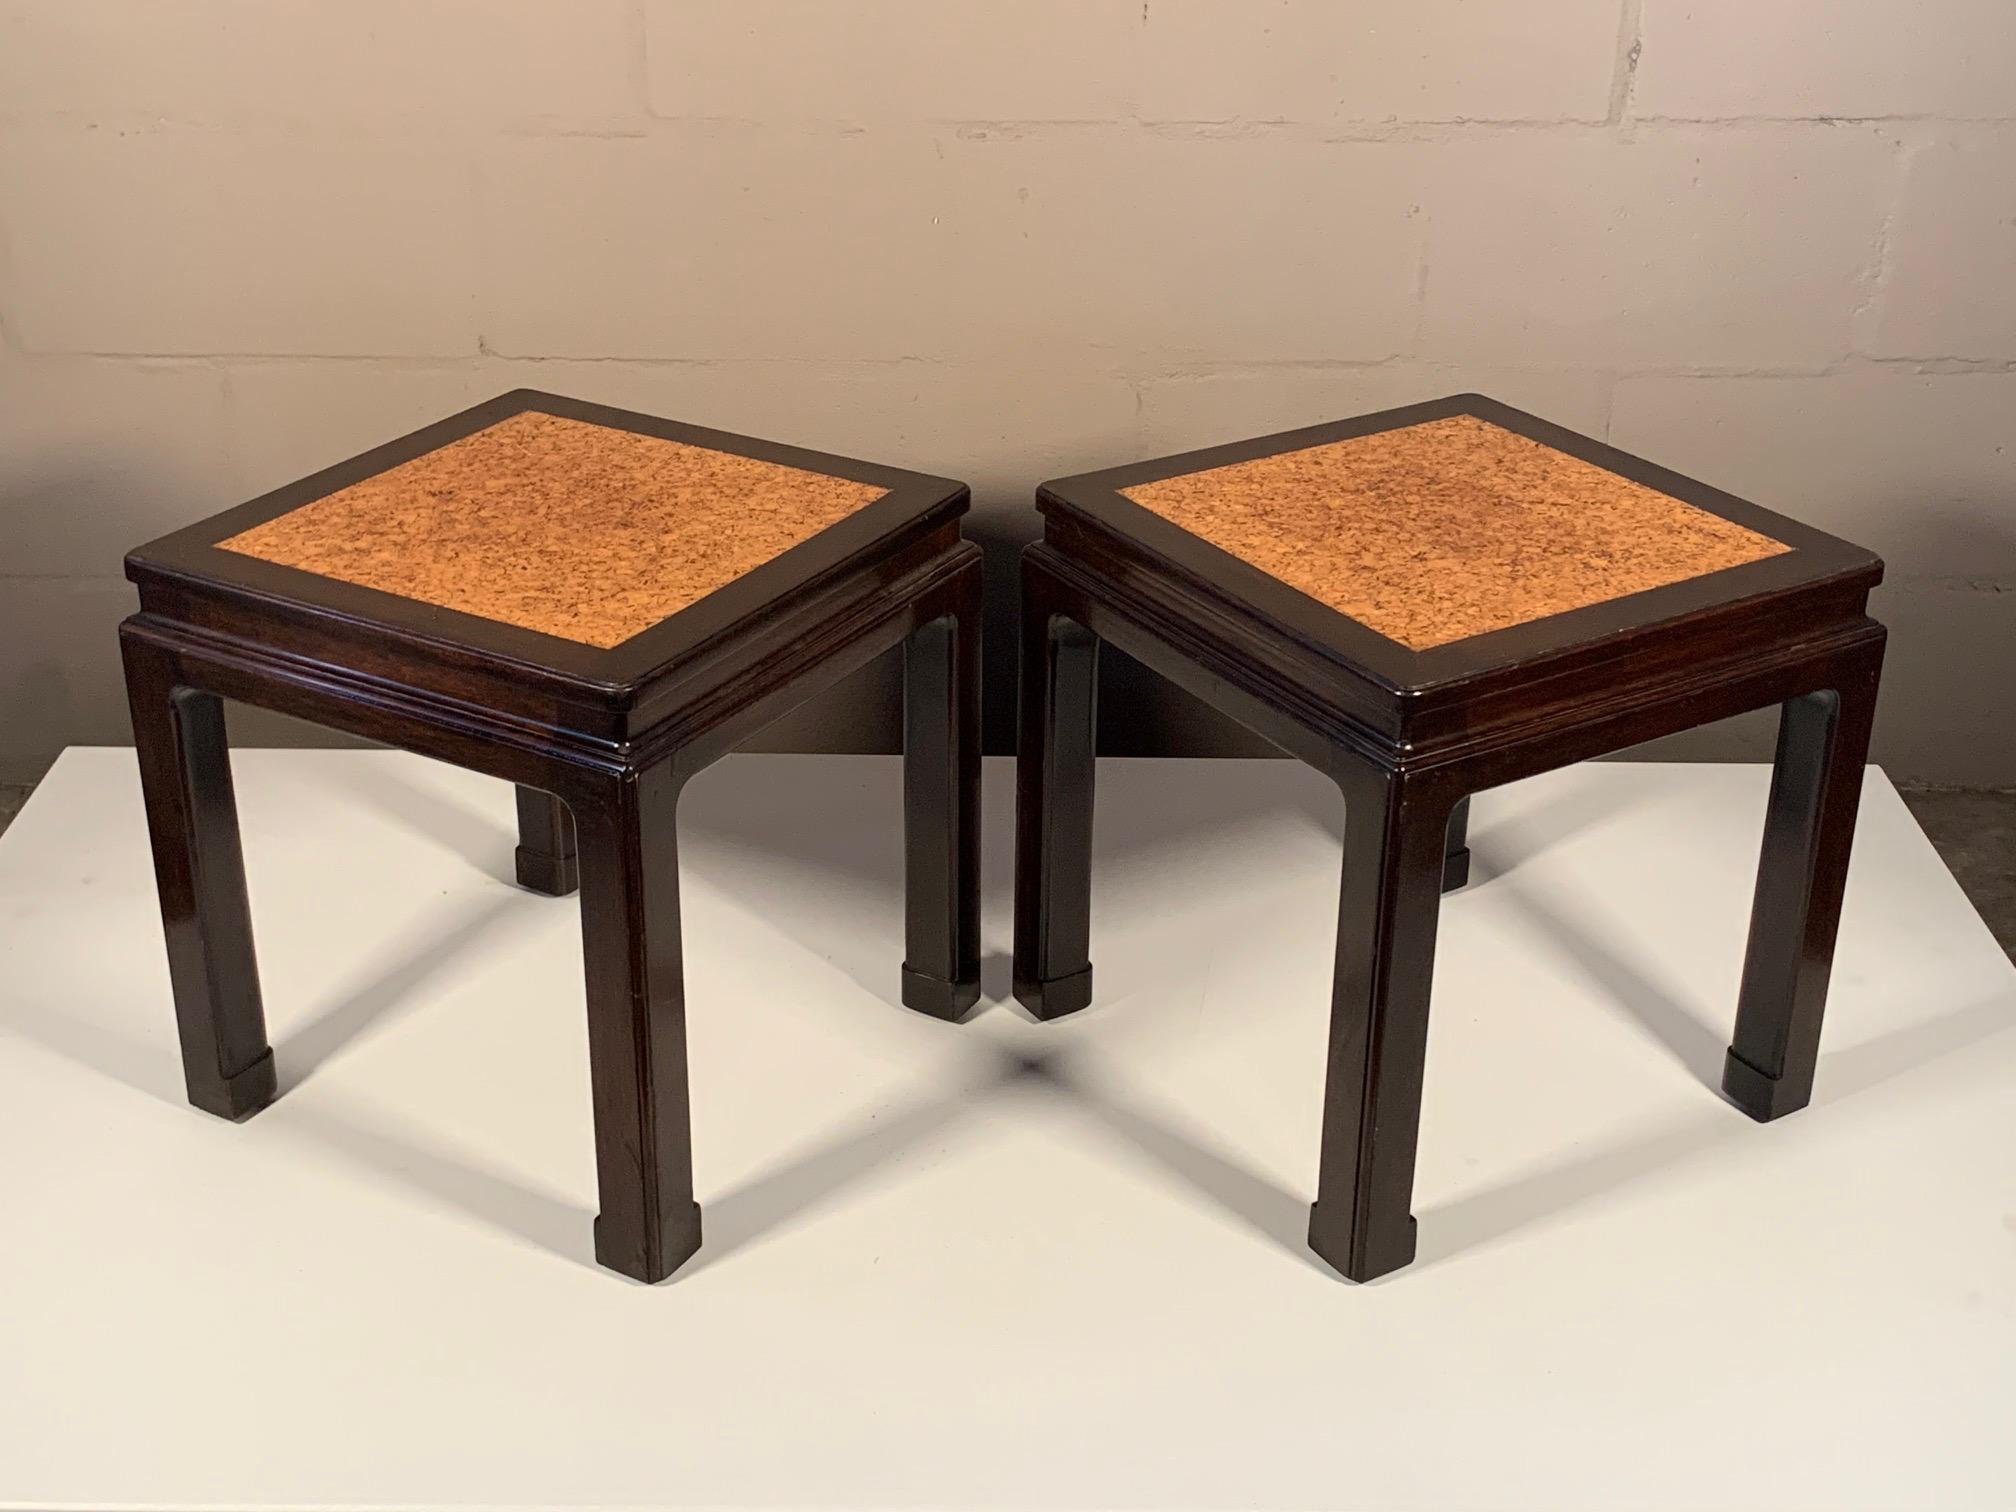 Une paire inhabituelle et rare de tables d'appoint par Edward Wormley pour Dunbar, vers les années 1940. Acajou avec dessus en liège d'origine, style asiatique avec étiquettes Dunbar vertes.